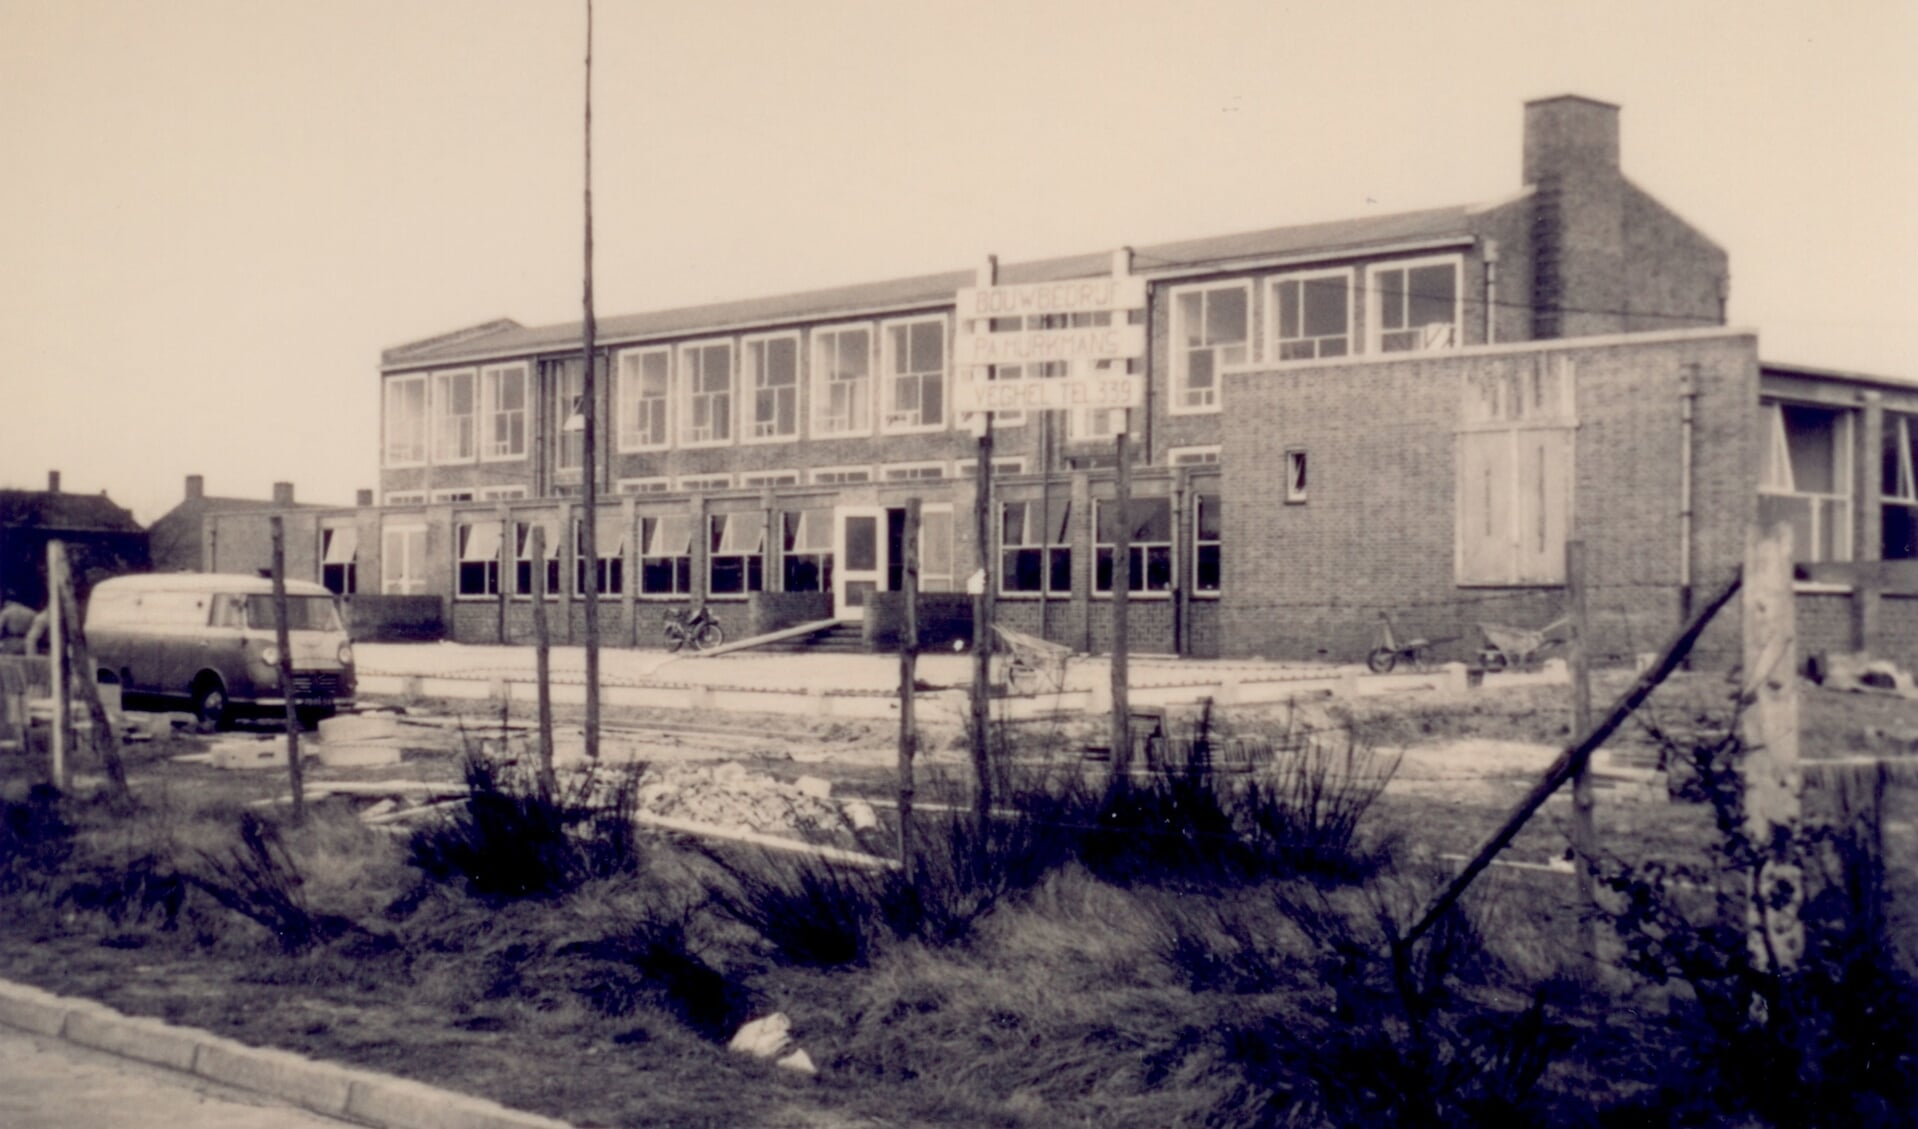 Jongensschool aan de Zandstraat in aanbouw (1959, fotonummer 14424)